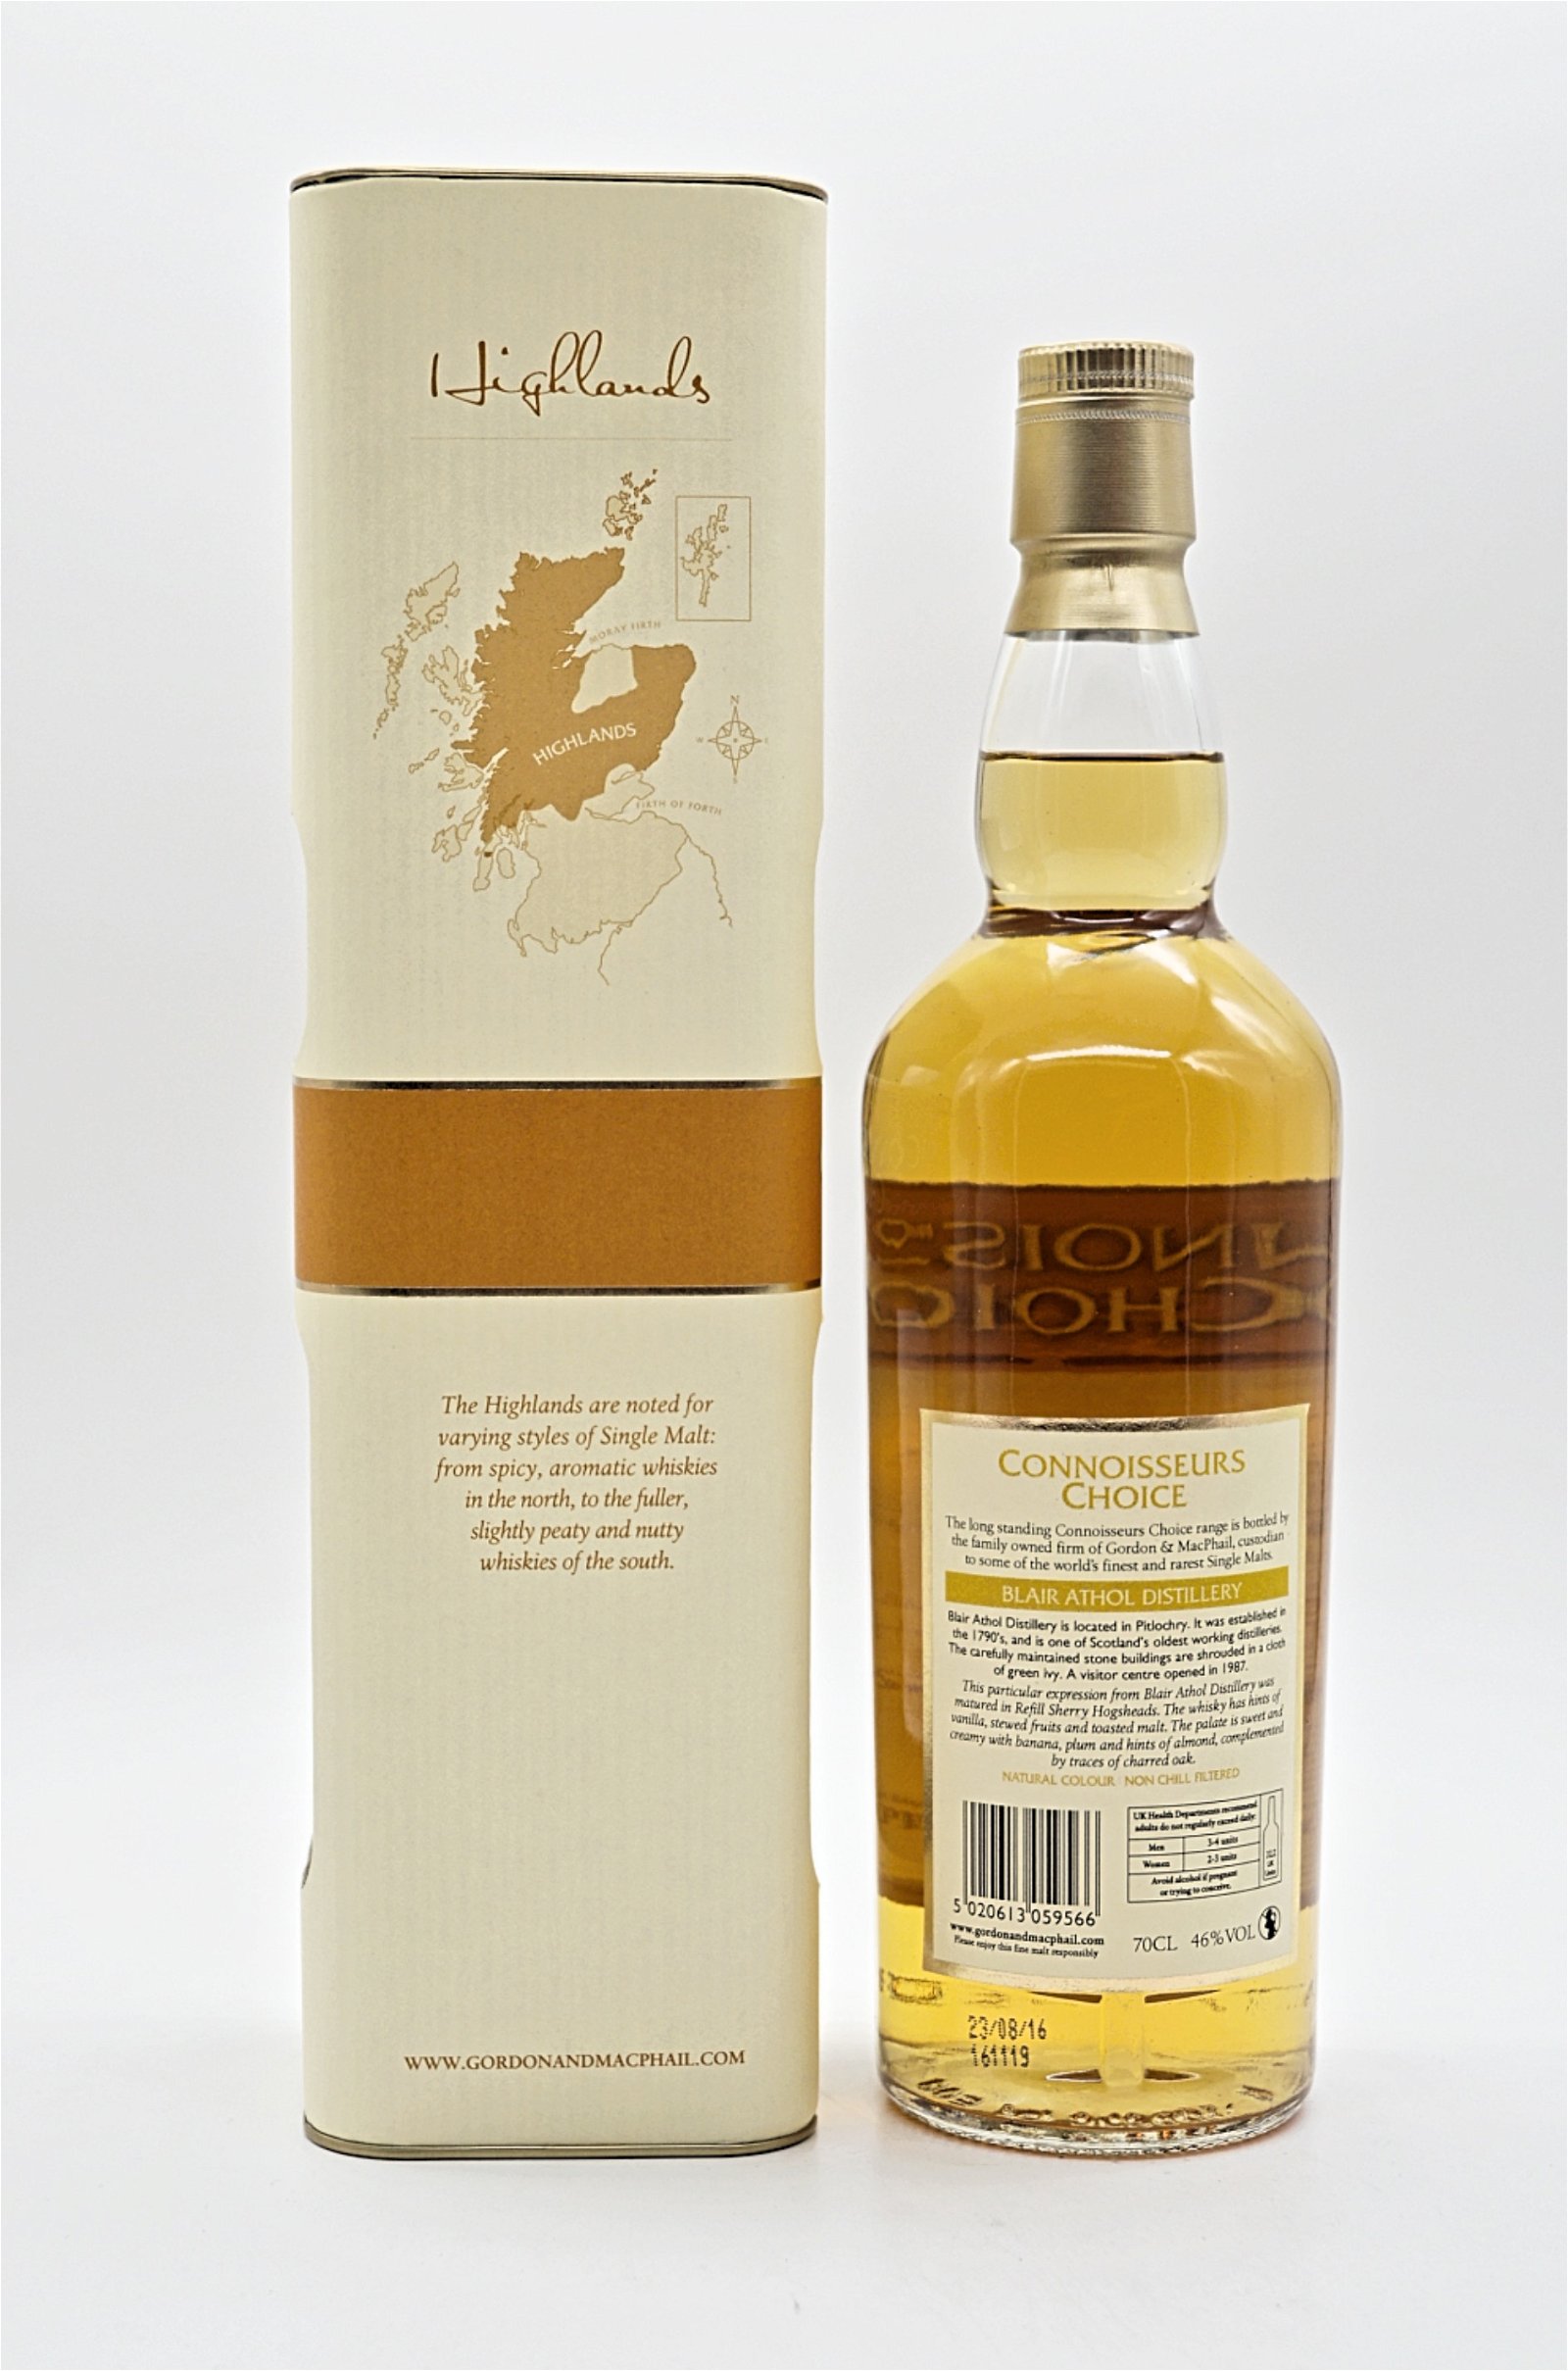 Gordon & Macphail Connoisseurs Choice Blair Athol Distillery 2007/2016 Single Malt Scotch Whisky